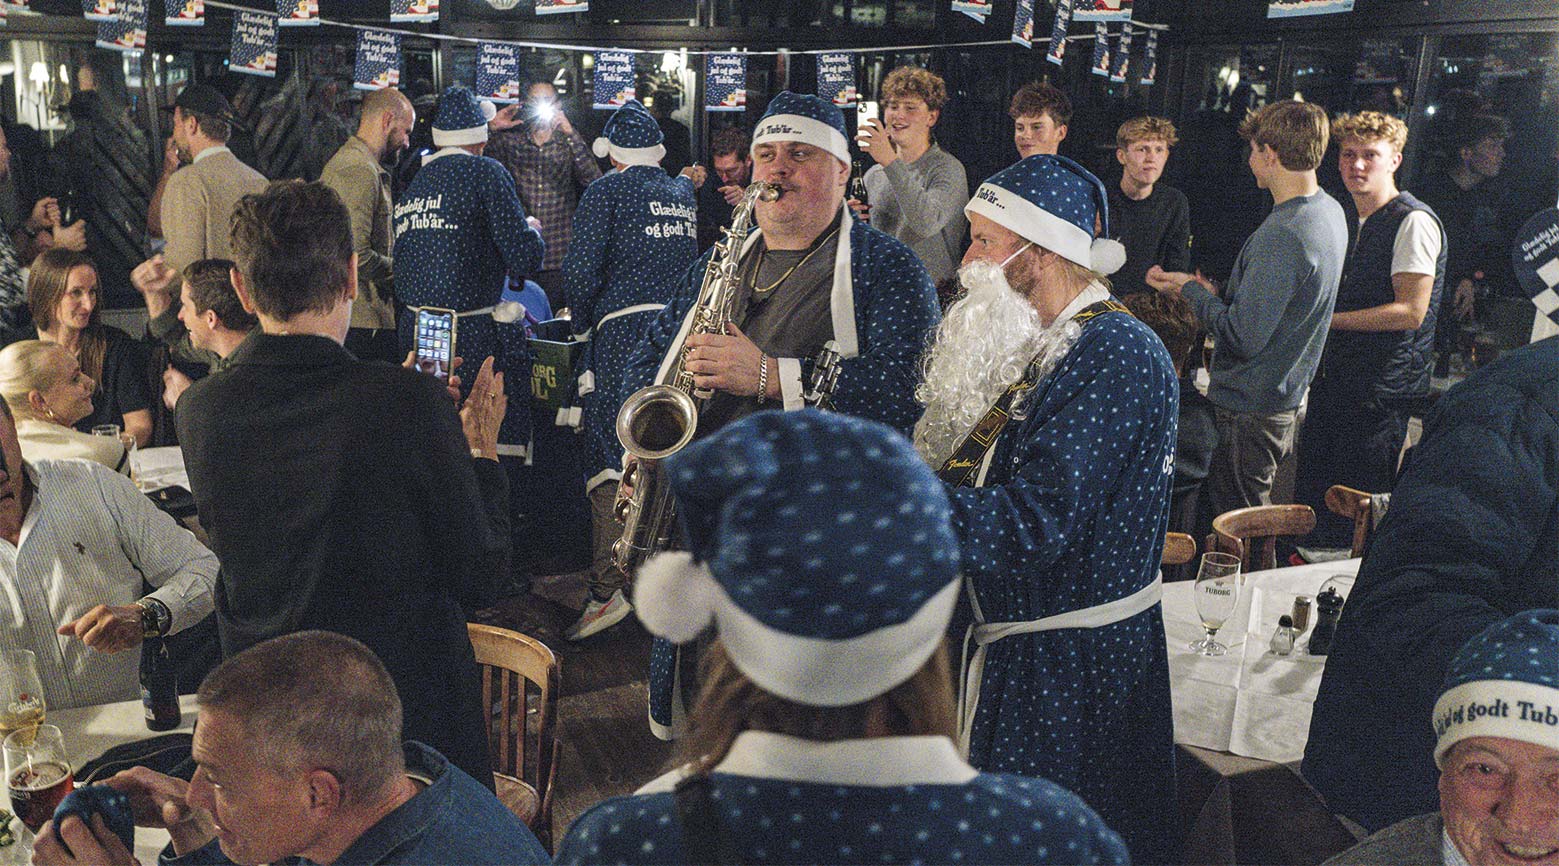 Der var god stemning og højt skum på Café Espersen, da Tuborgs juleøl i fredags blev sendt på gaden. Foto: TorbenStender.